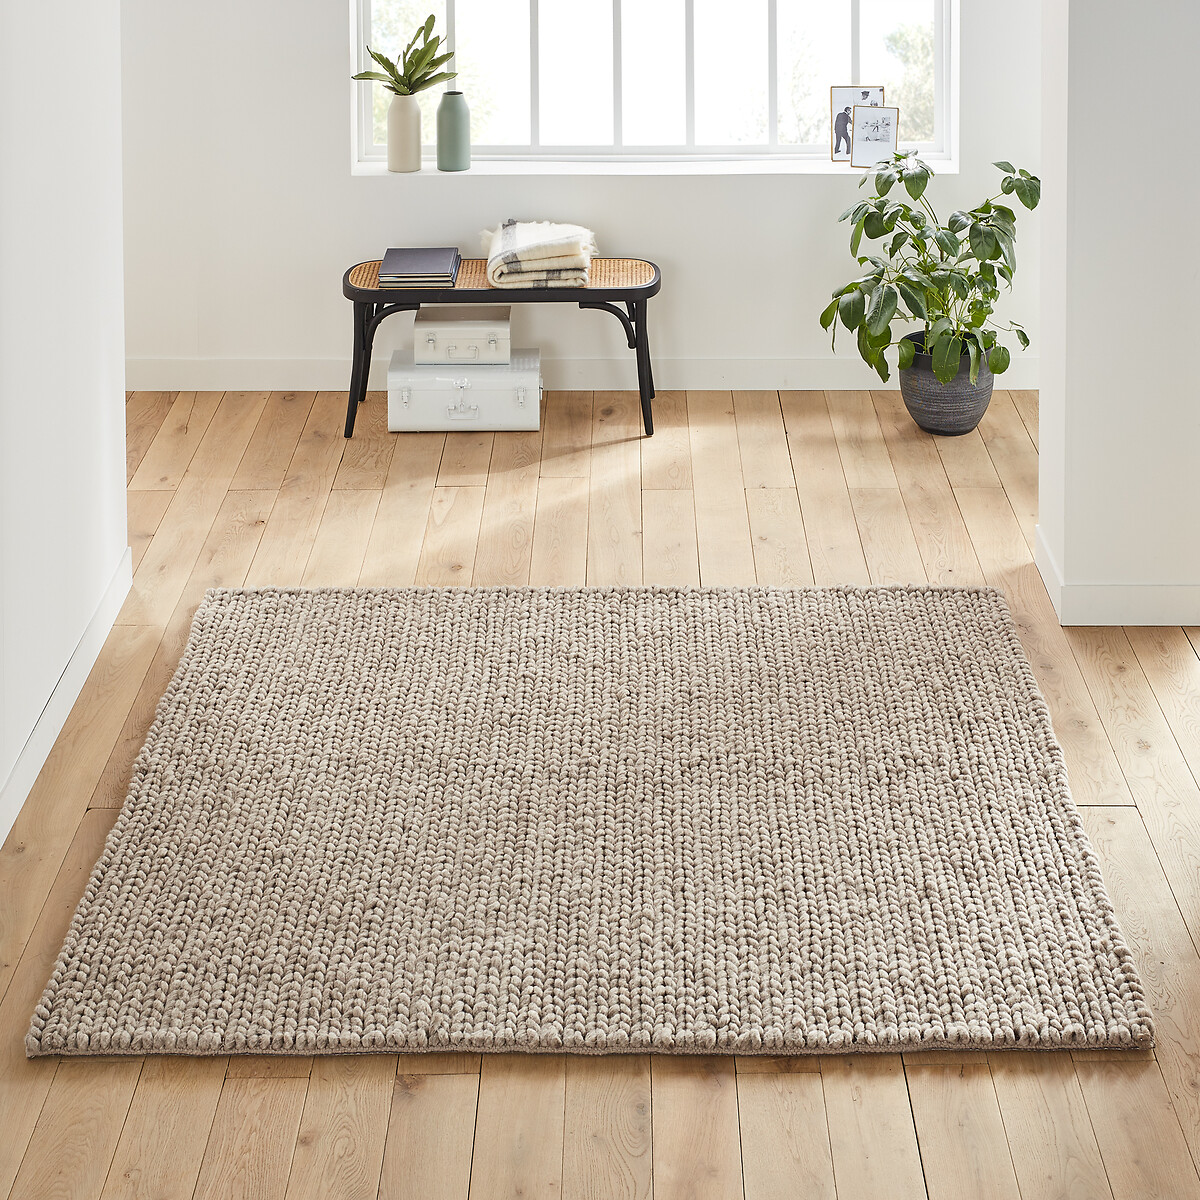 57 Wool Carpet ideas - wool carpet, carpet, rugs on carpet